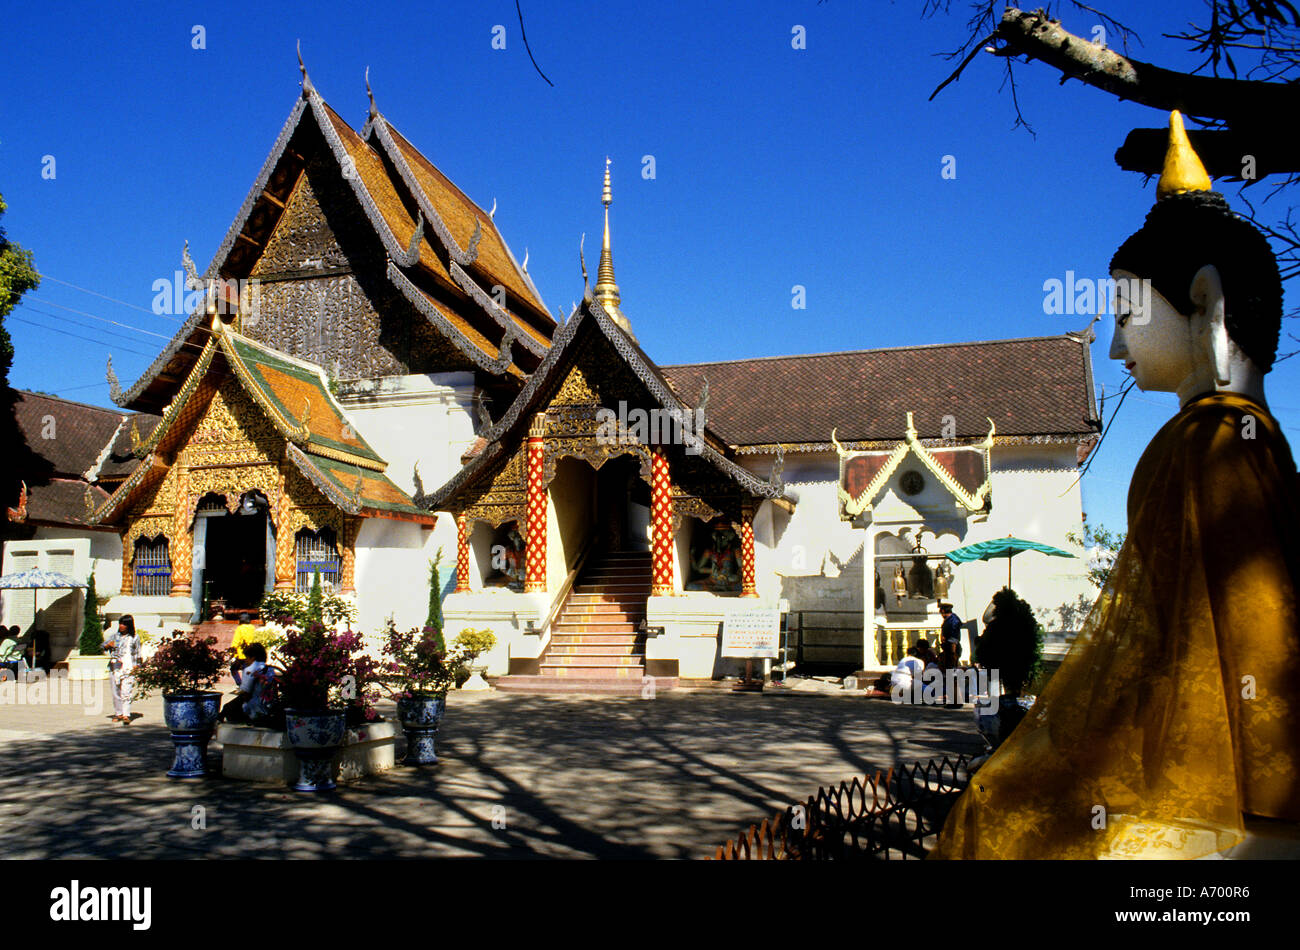 Wat Phra That Doi Suthep périphérie de la province de Chiang Mai Chiang Mai Thailande Asie Banque D'Images